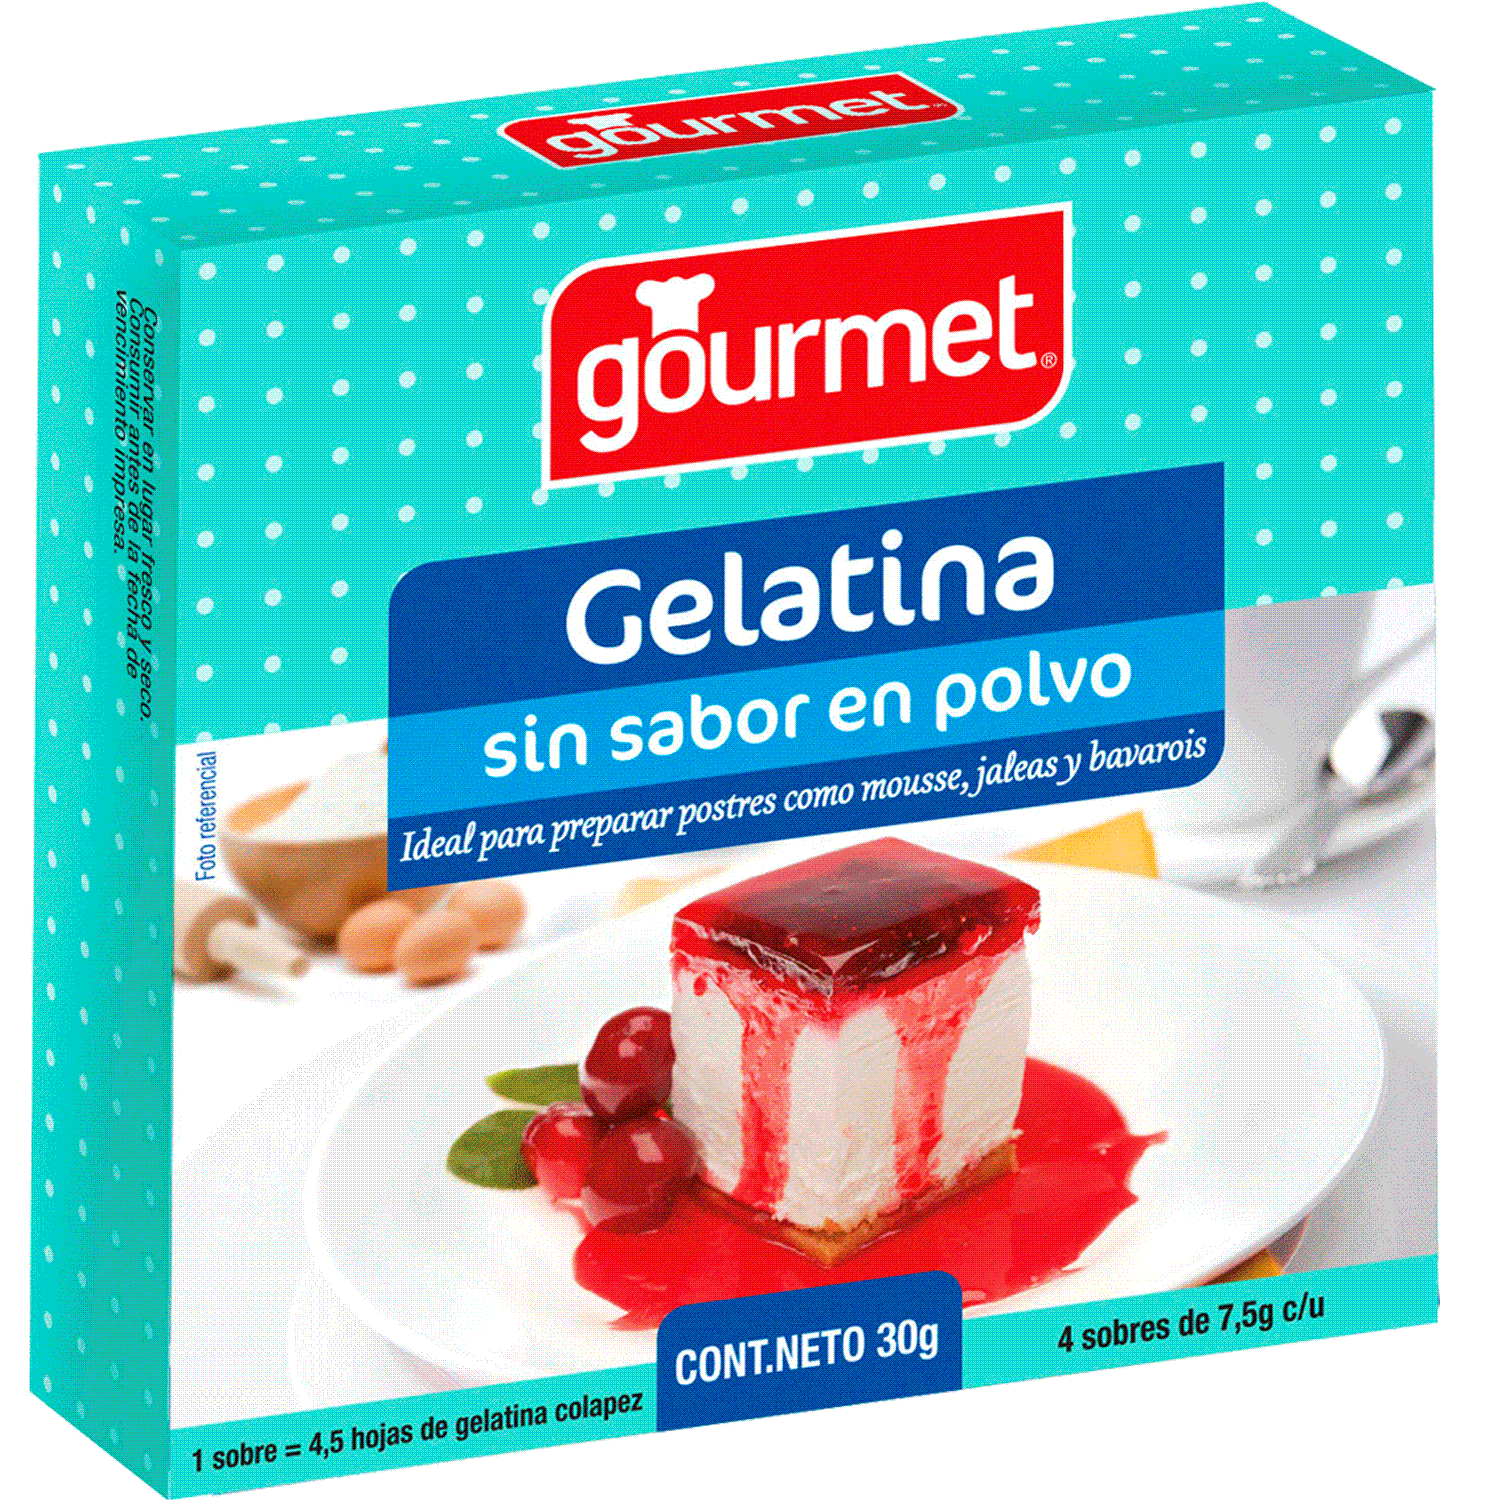 LIEBERS Gelatina sin sabor, gelatina sin azúcar, Kosher, polvo de gelatina  pura sin gluten, sin sabor, caja de 1 onza, contiene 2 paquetes.